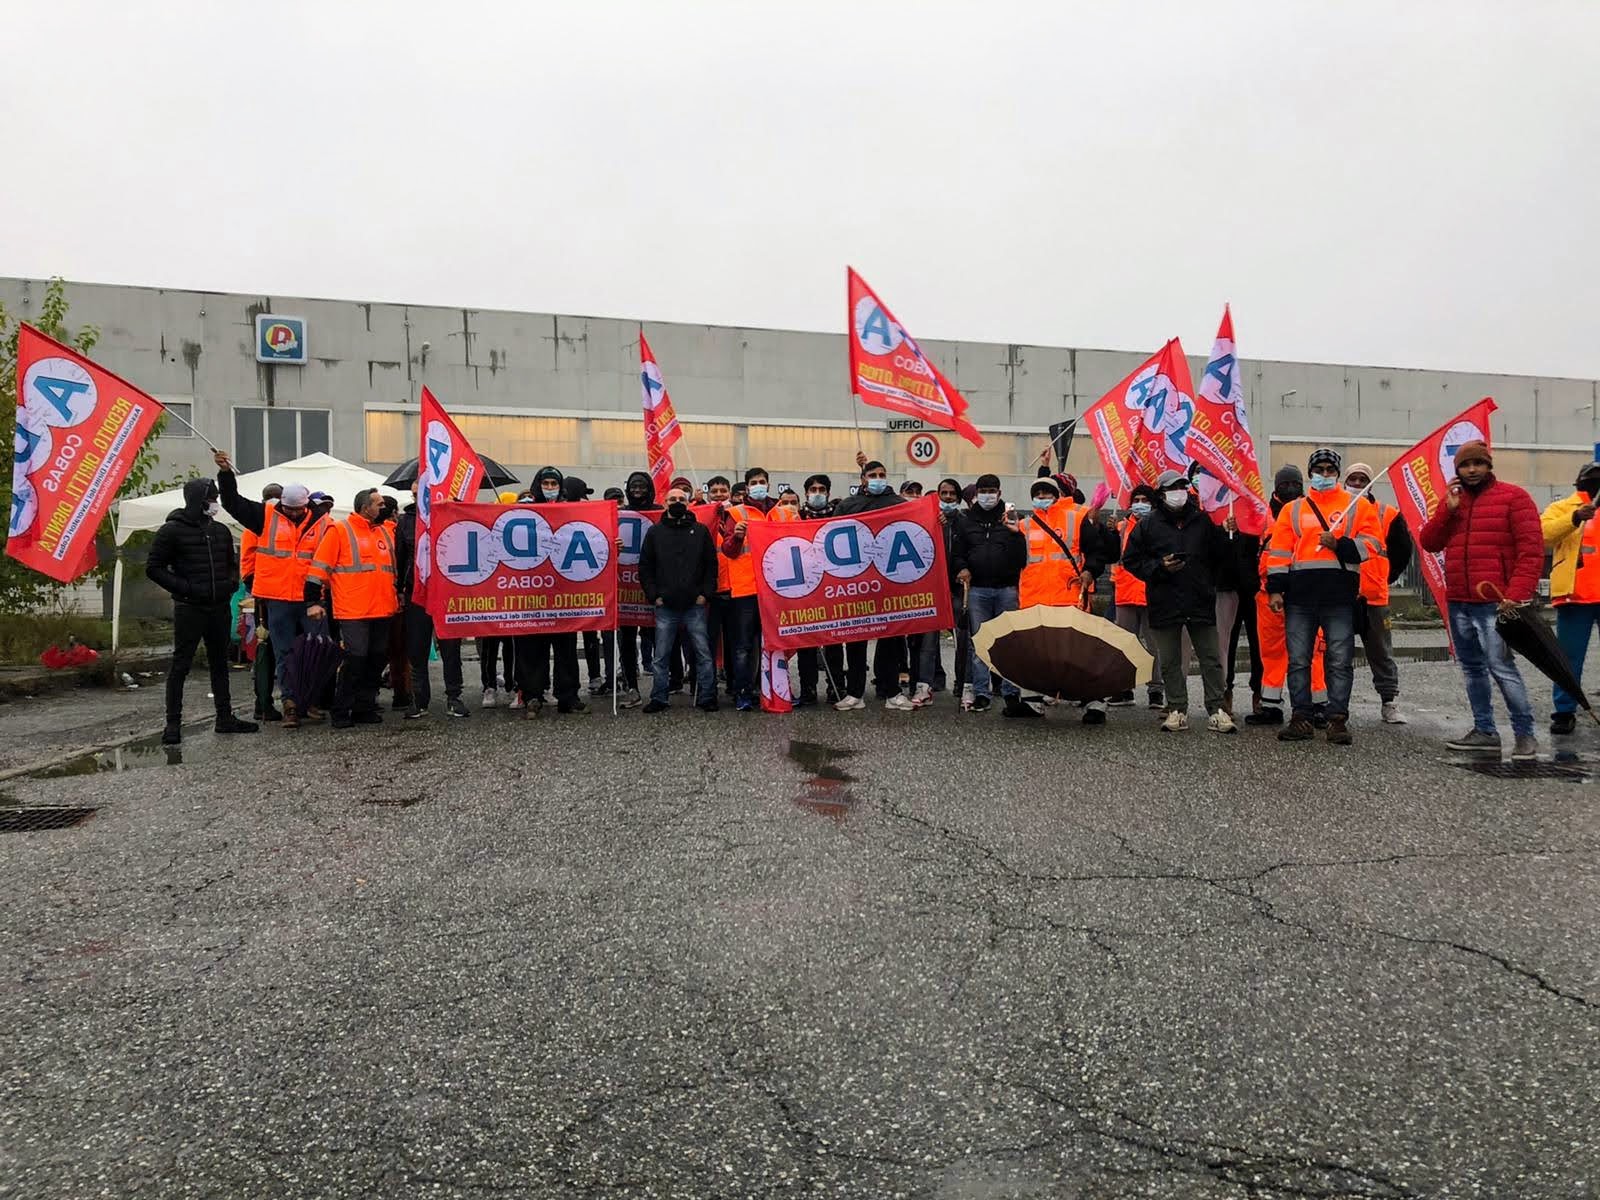 Sindacato di Base ADL Cobas - Grande adesione allo sciopero nazionale della logistica nel magazzino Maxi Di ad Alessandria